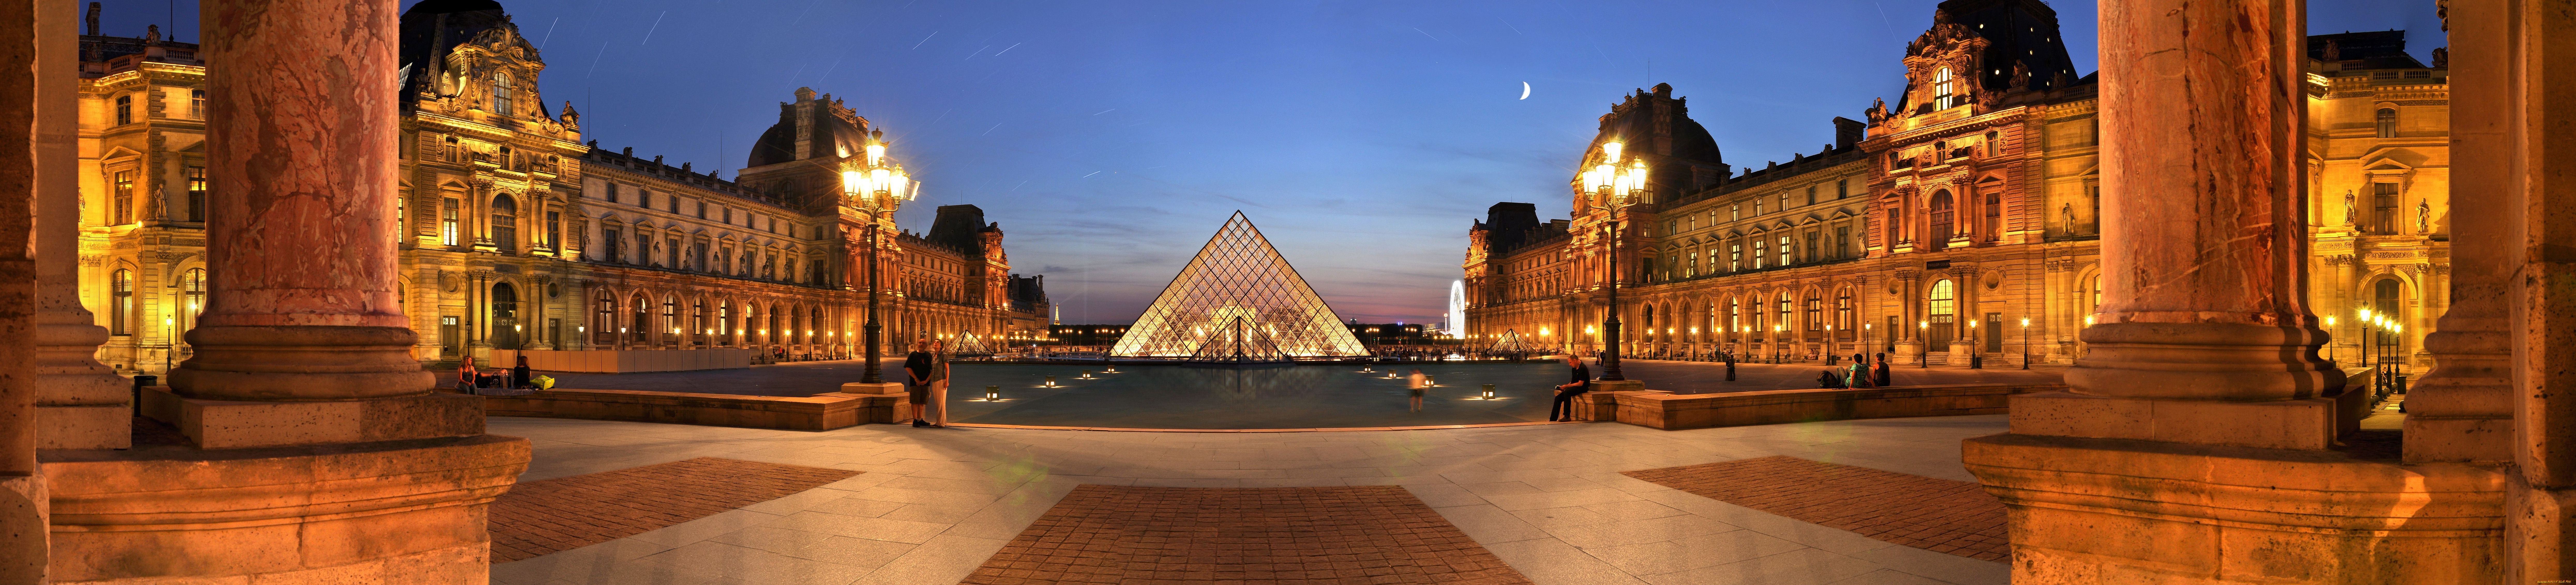 города, париж, франция, лувр, музей, пирамида